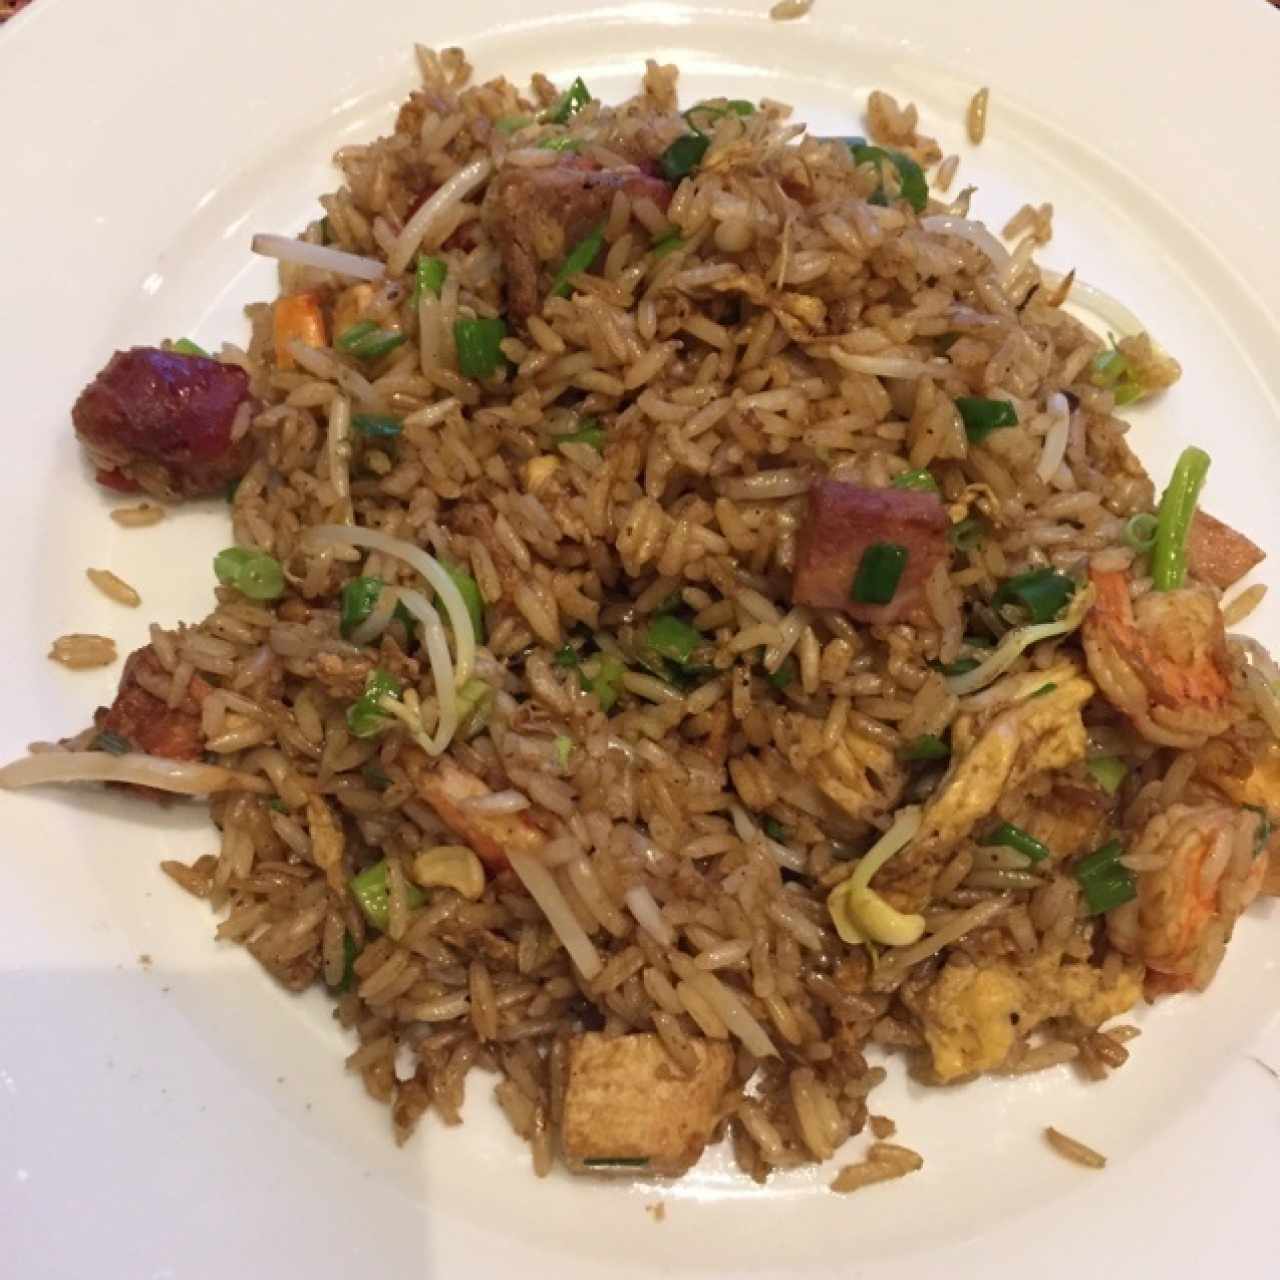 arroz frito especial